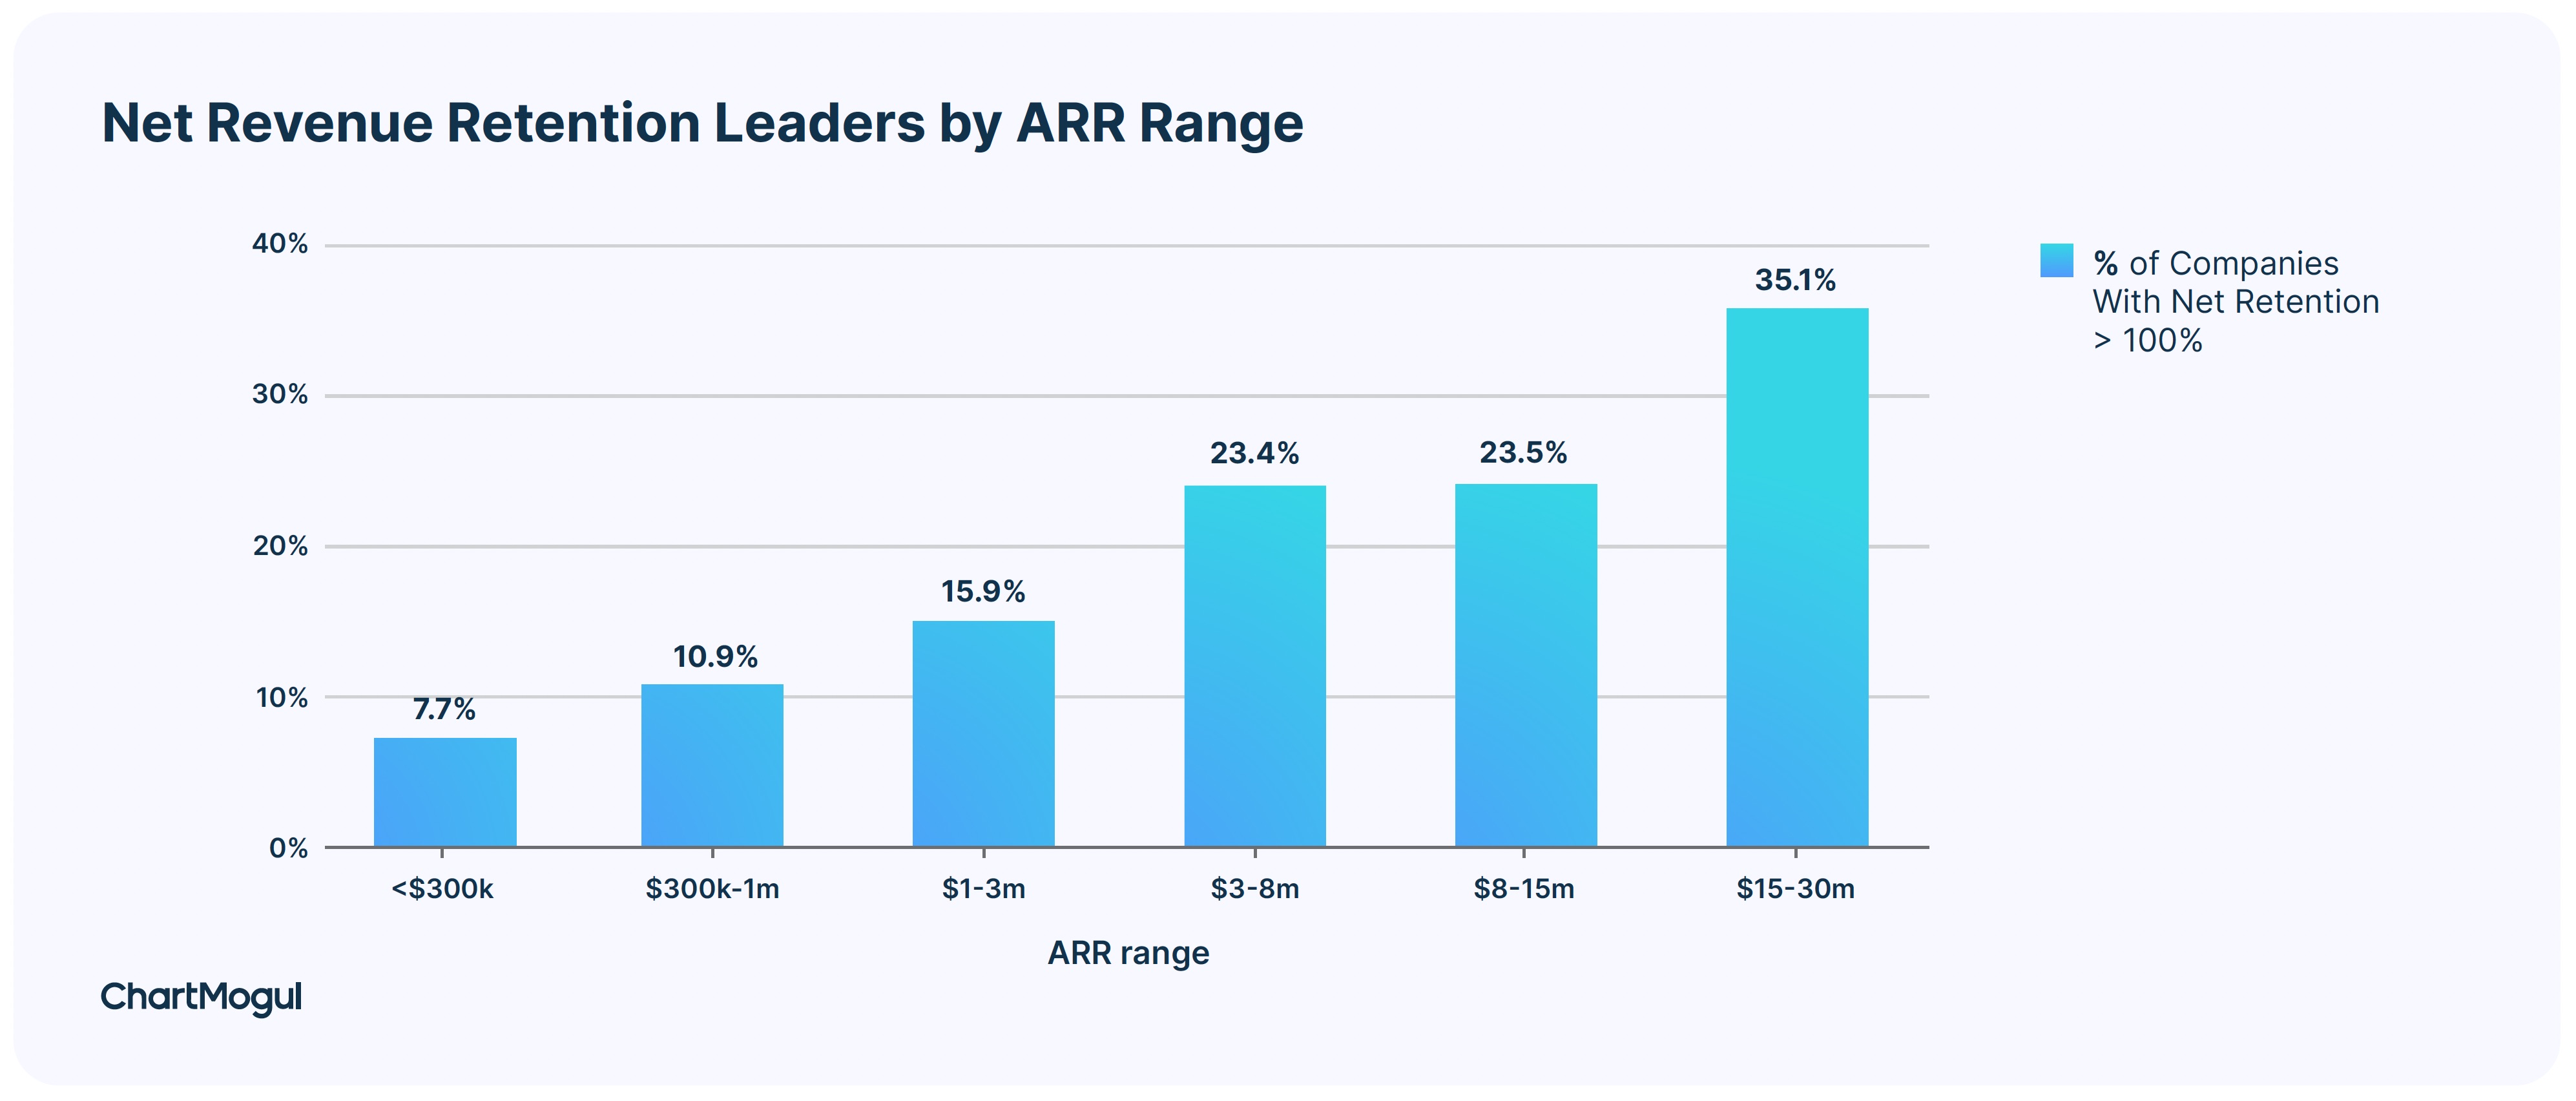 Net revenue retention leaders by ARR range